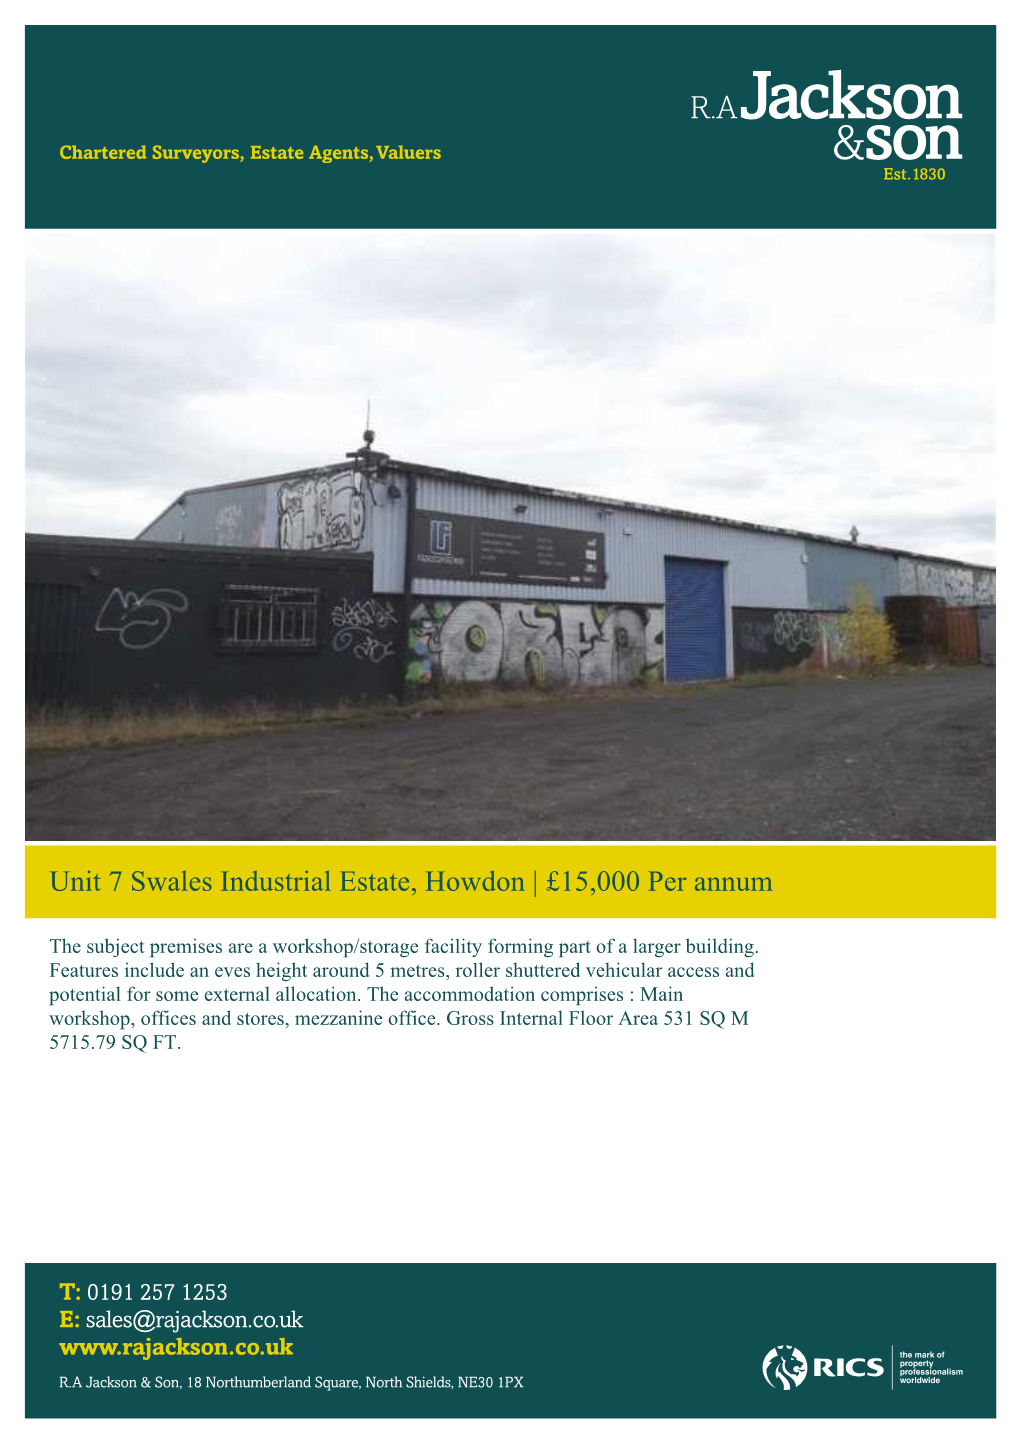 Unit 7 Swales Industrial Estate, Howdon | £15,000 Per Annum